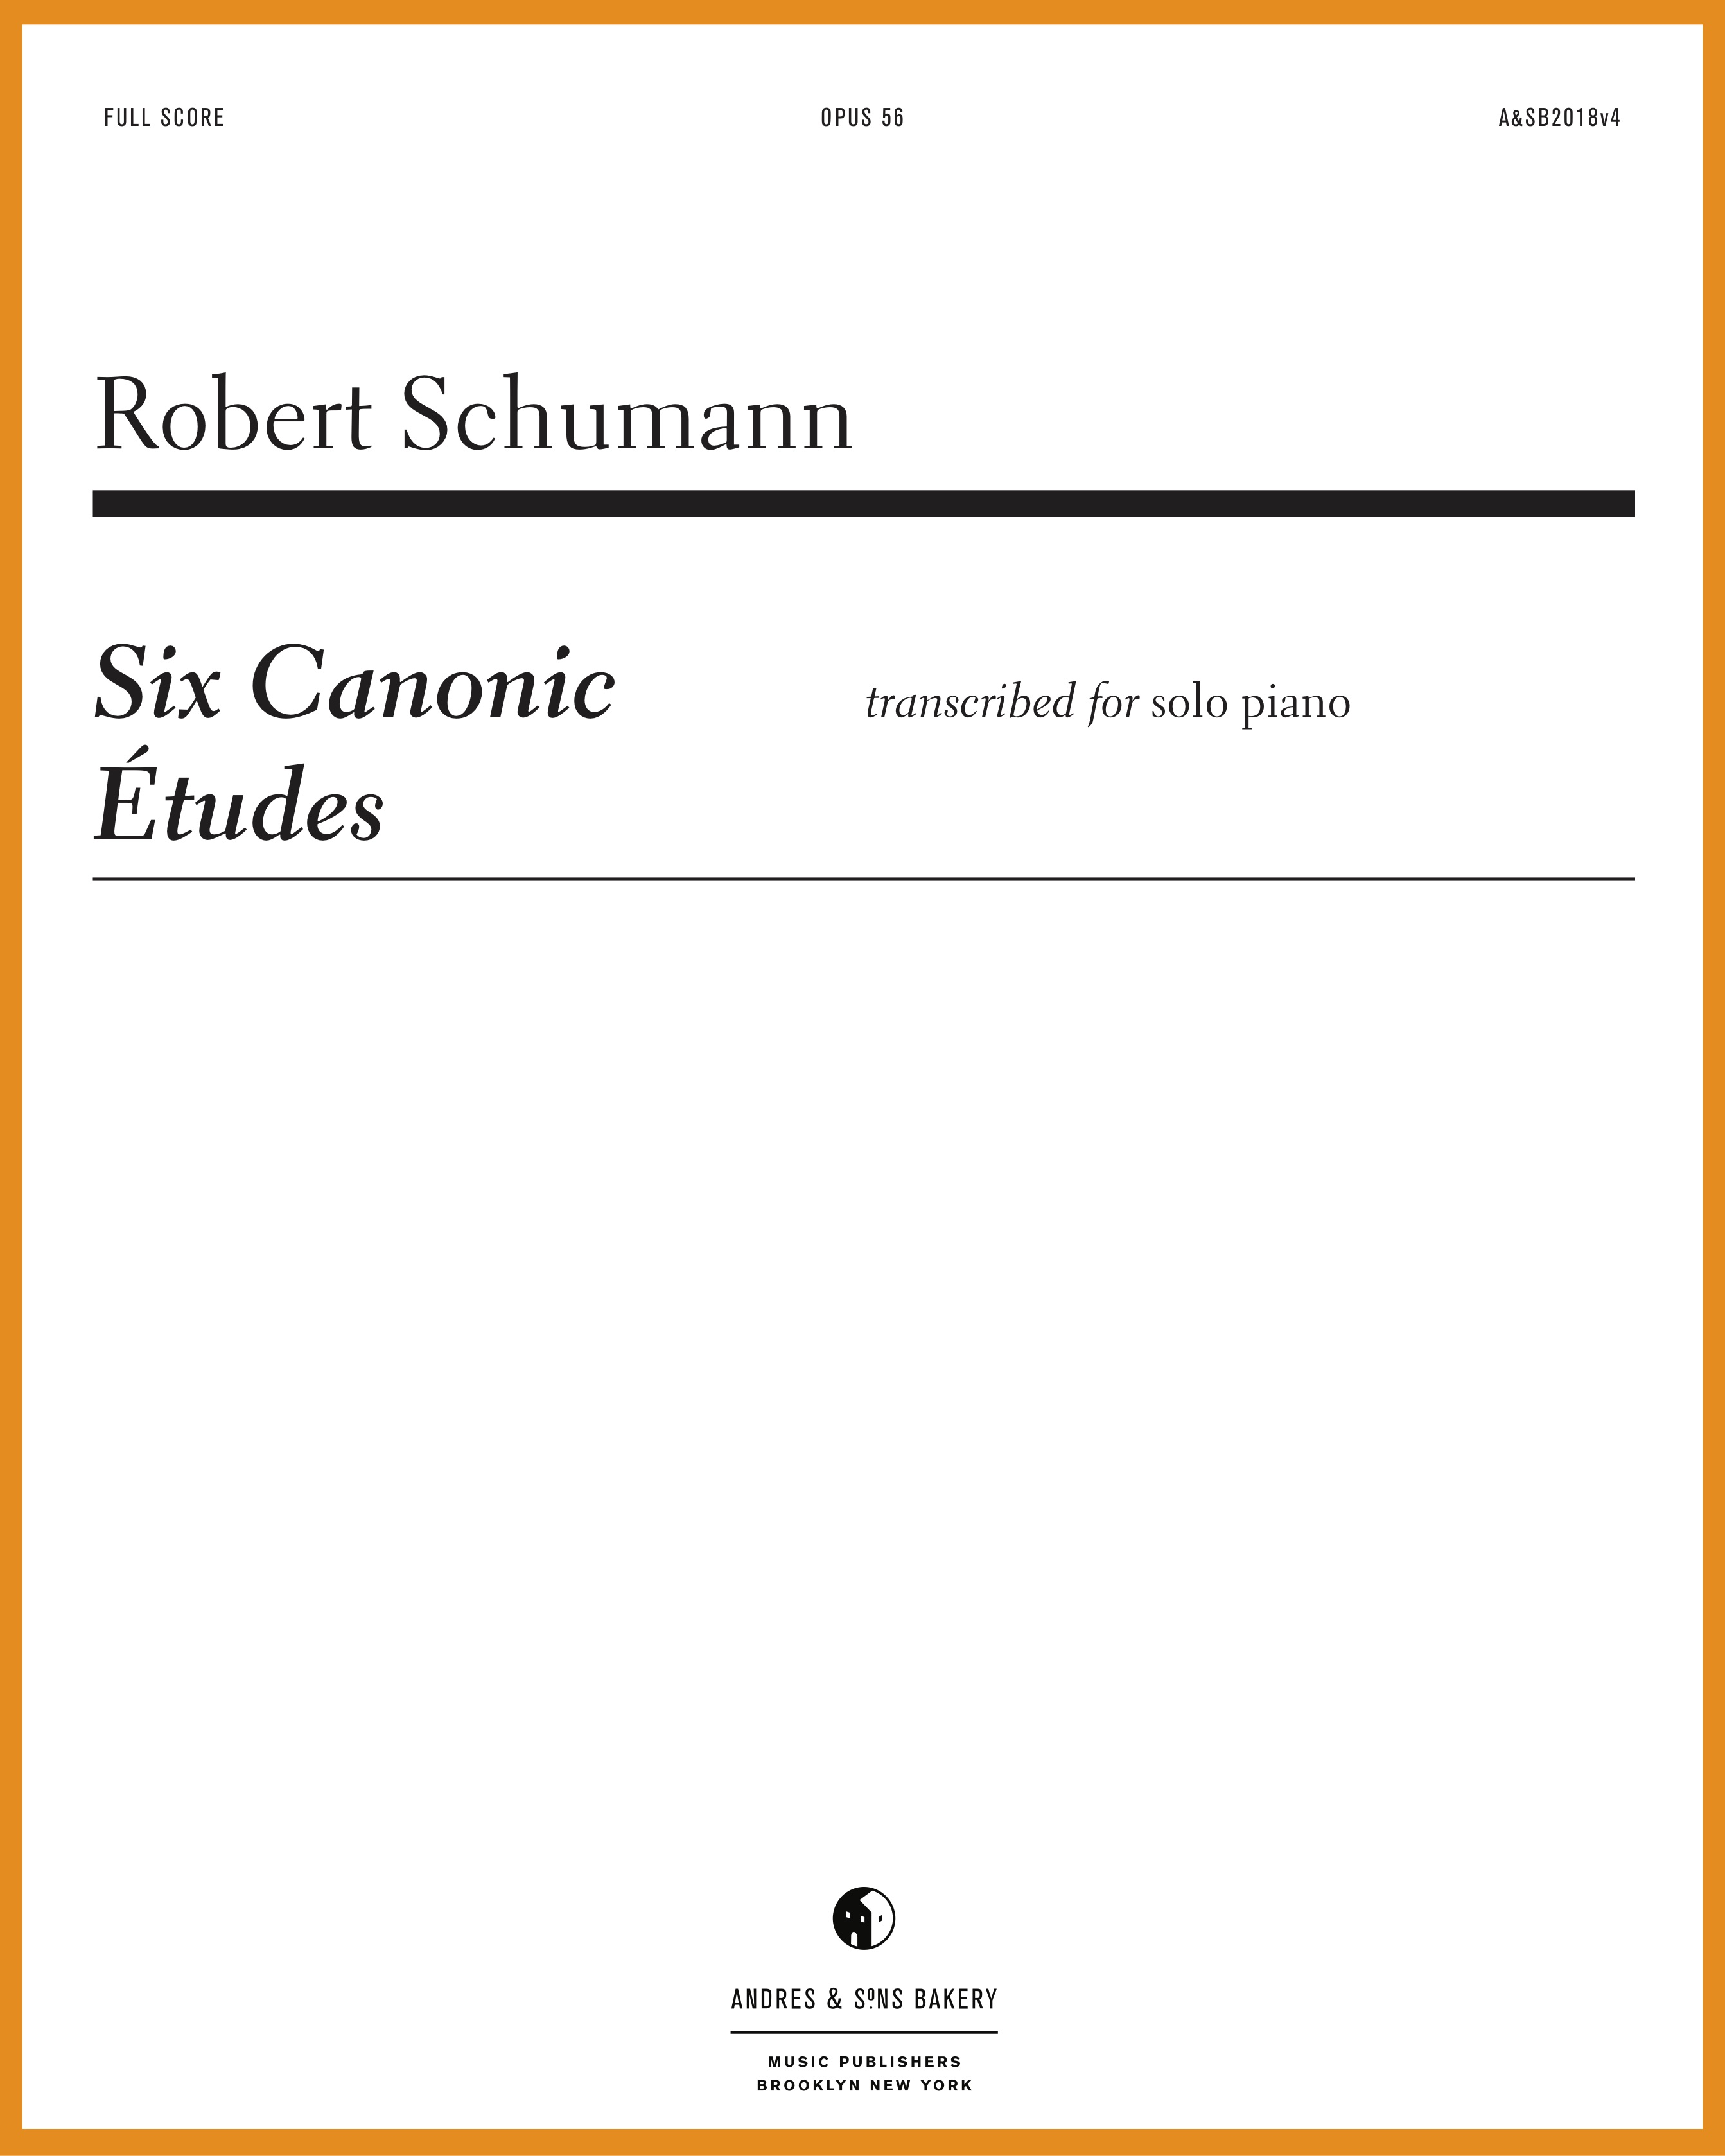 Six Canonic Études, Op. 56